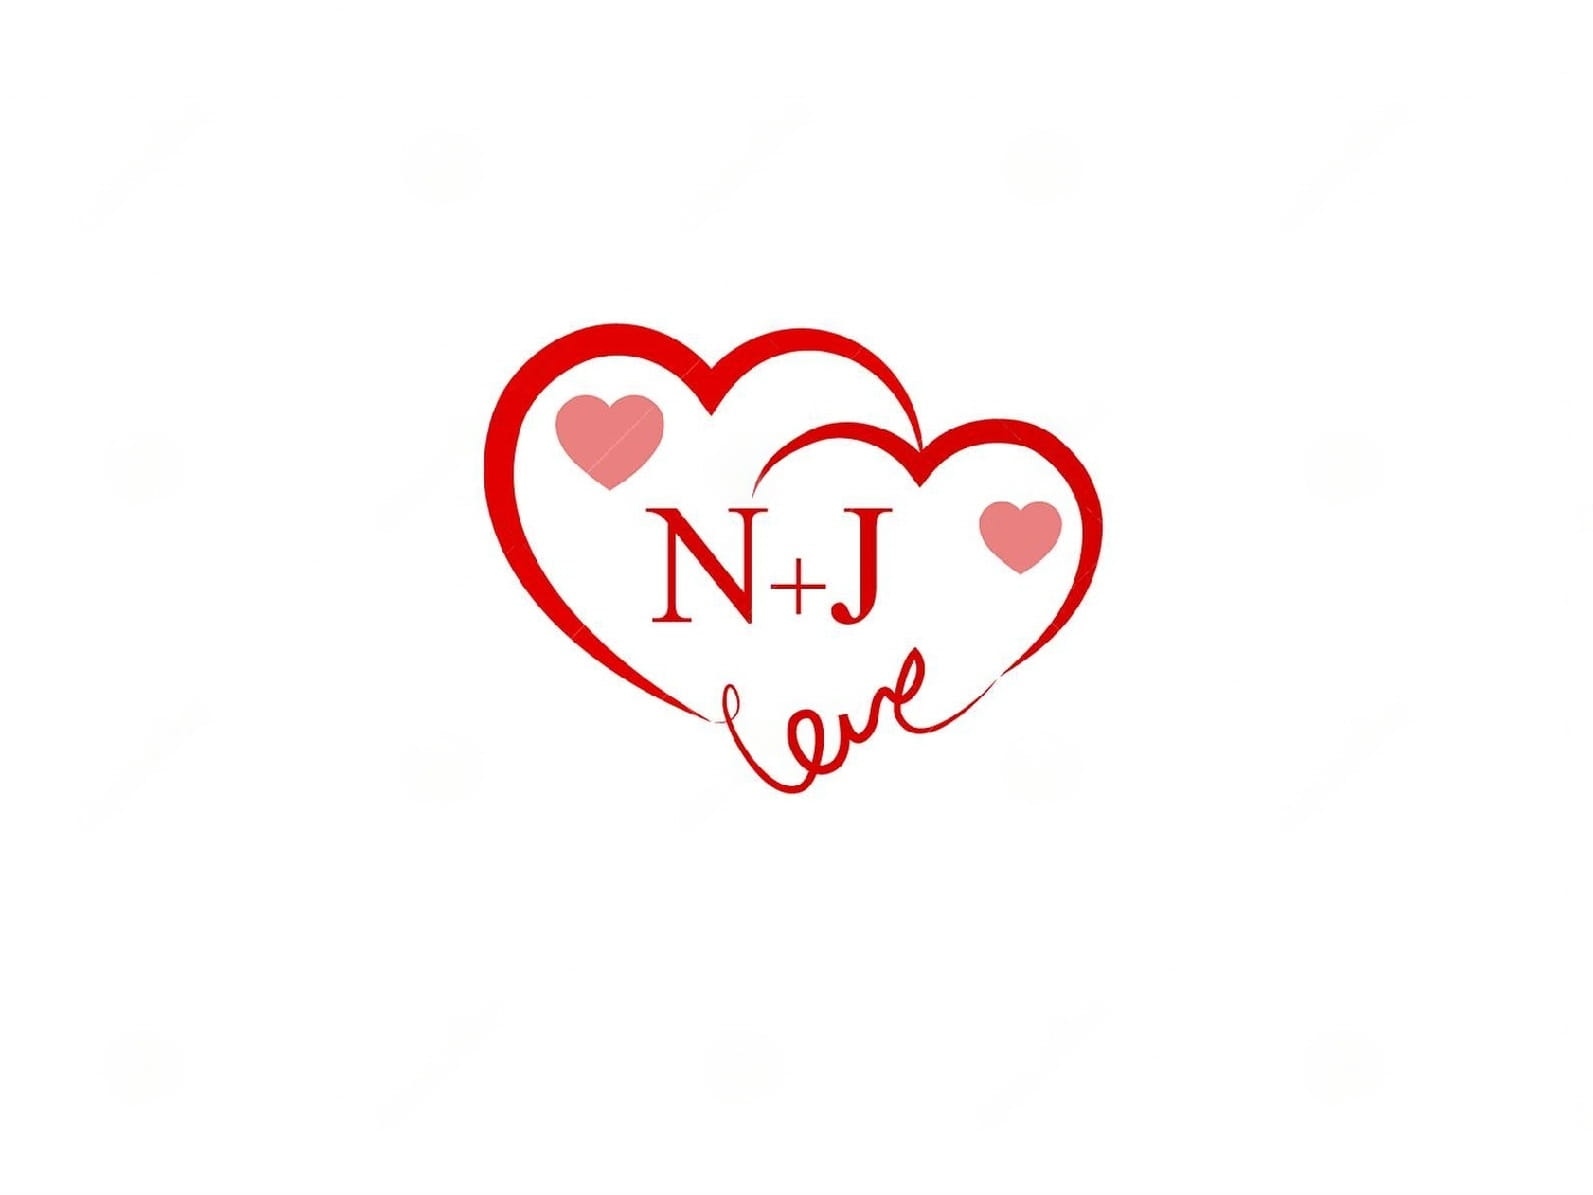 N.j Name Love - n j heart